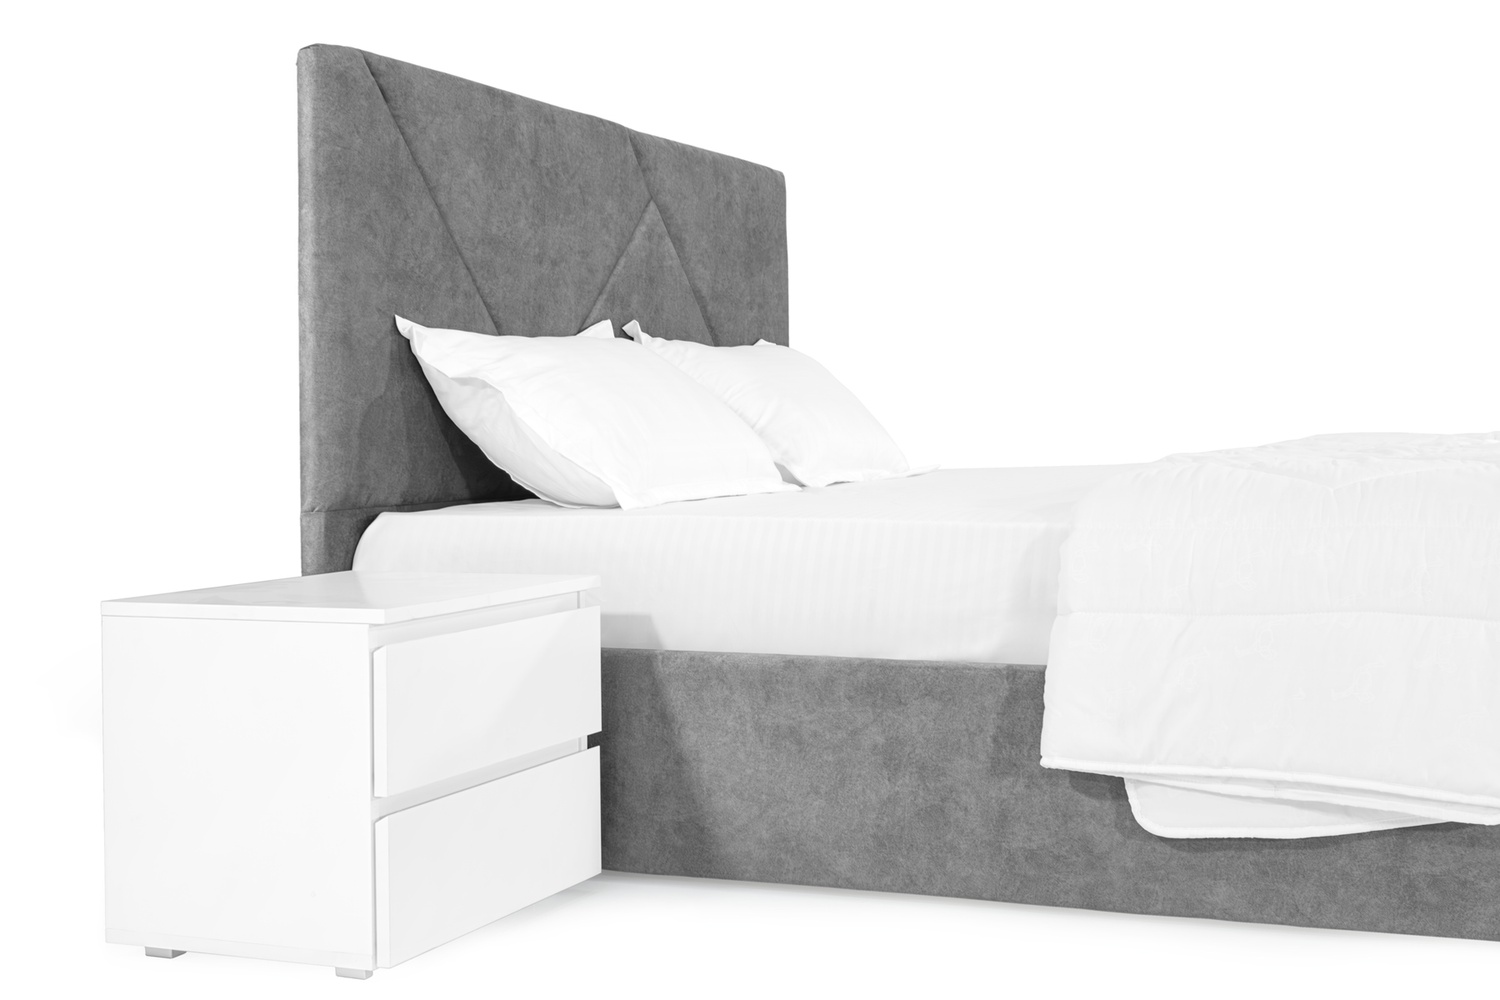 Ліжко Петунія 140х200 (Світло-сірий, ламелі, без підйомного механізму) IMI ptn140x200ssb фото